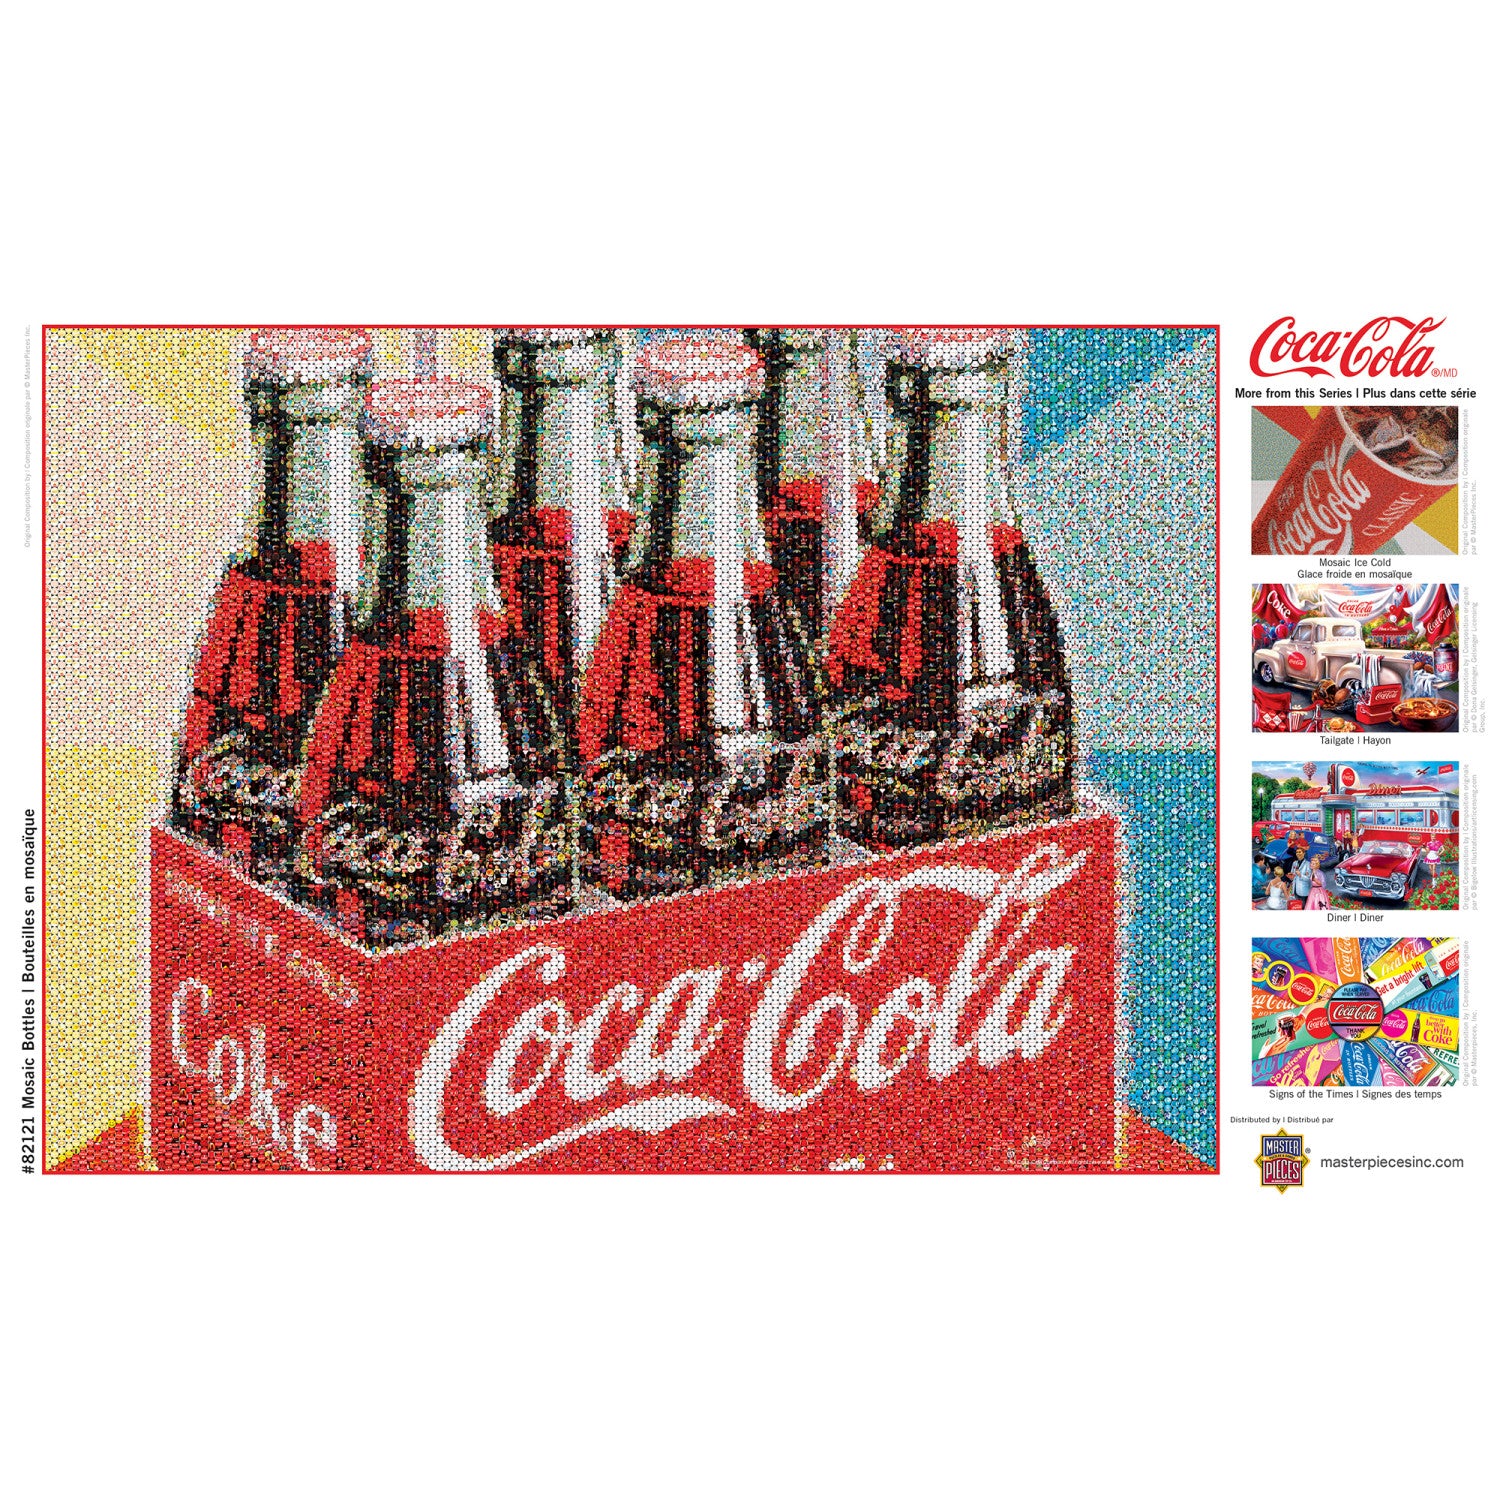 Coca-Cola - Photomosaic Bottles 1000 Piece Puzzle  MasterPieces –  MasterPieces Puzzle Company INC